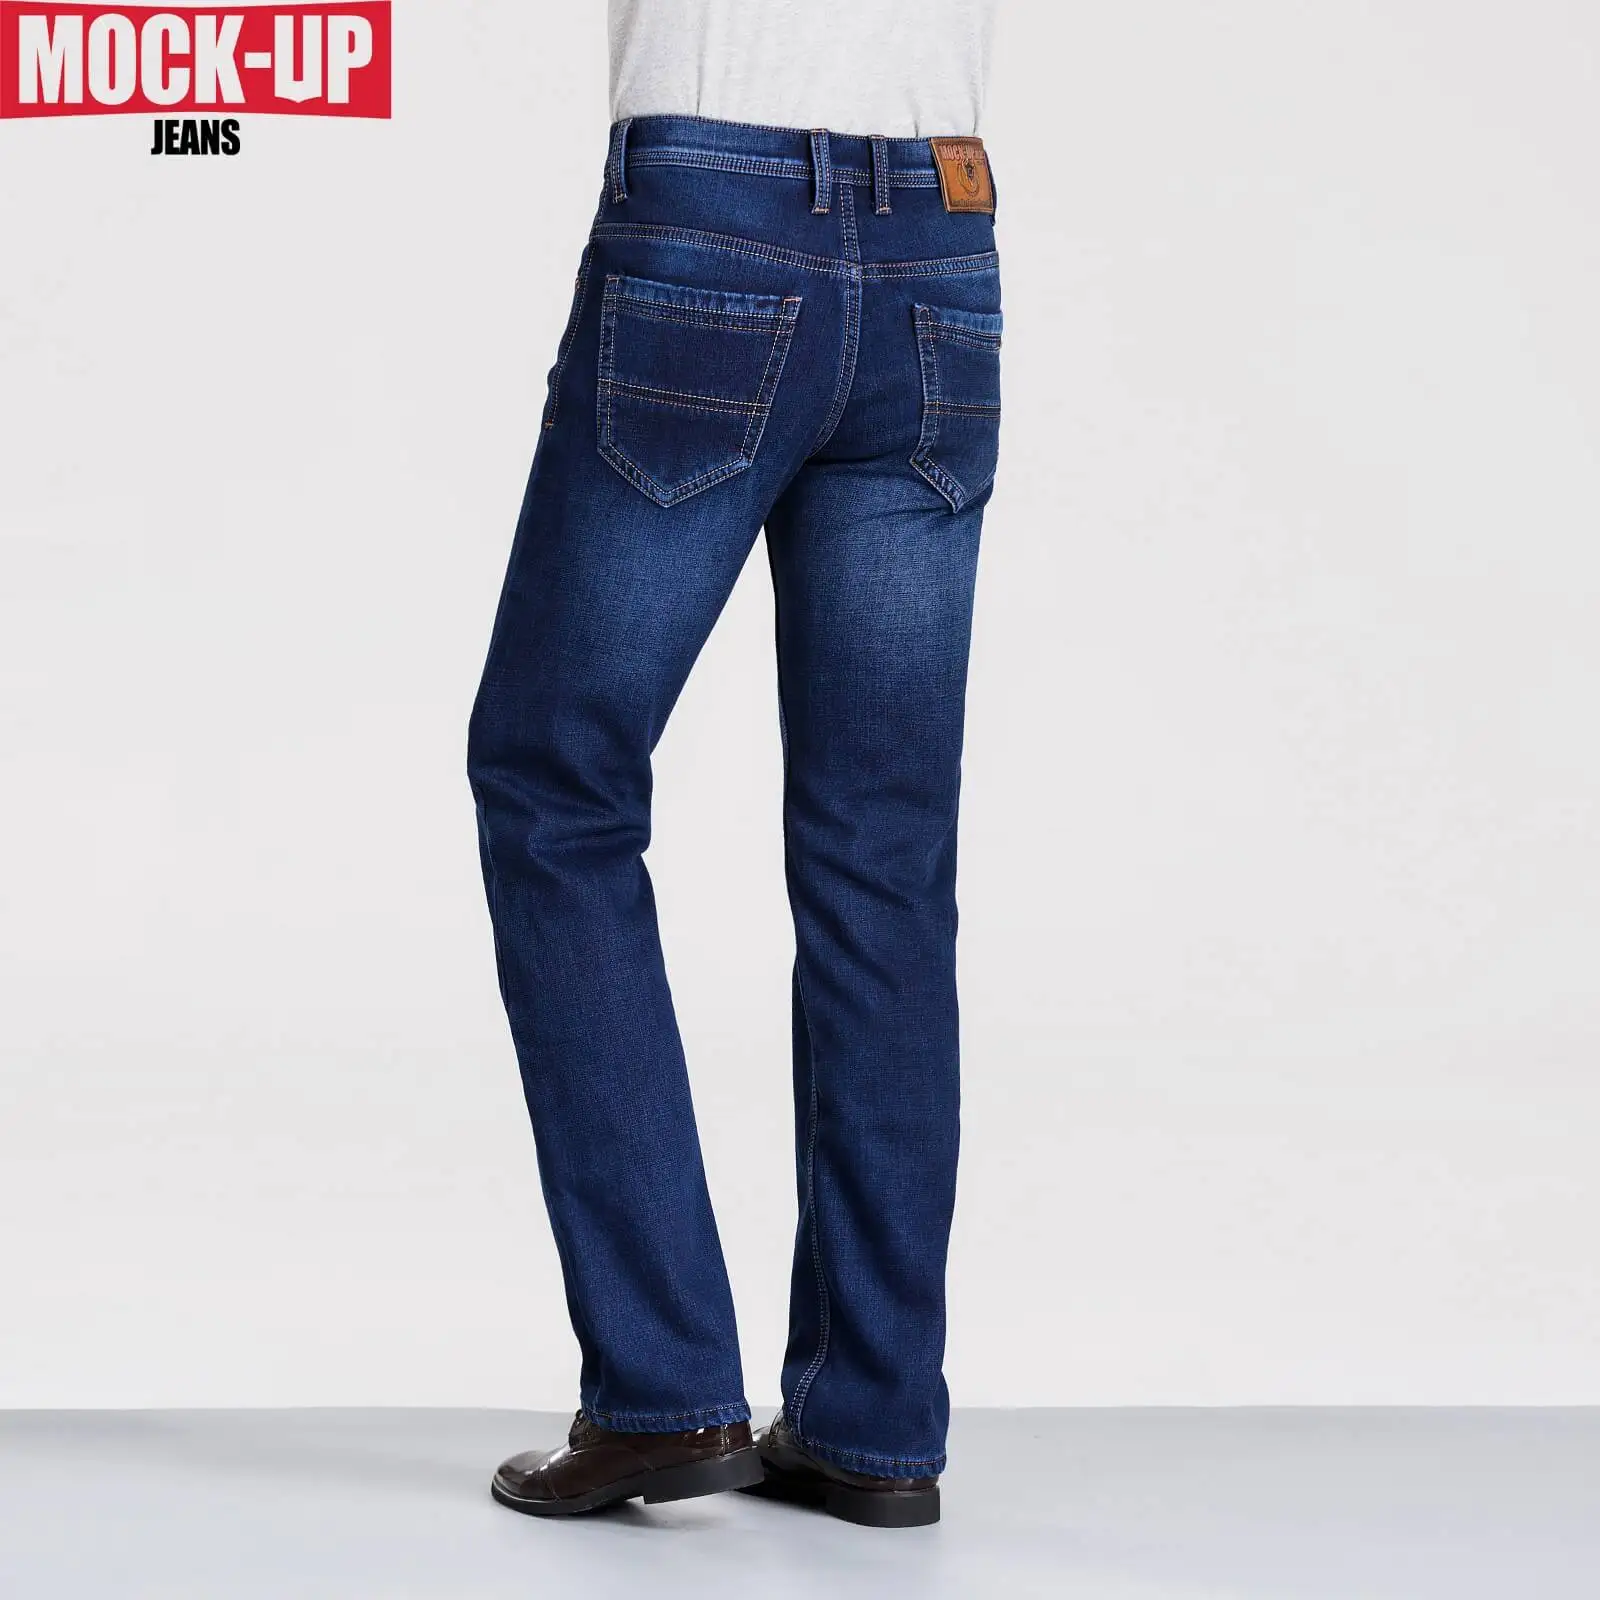 Макет бренд зима теплый стиль Dsq джинсы на молнии ширинка джинсы мужские флисовые мужские джинсы Горячая высокого качества джинсовые брюки 38